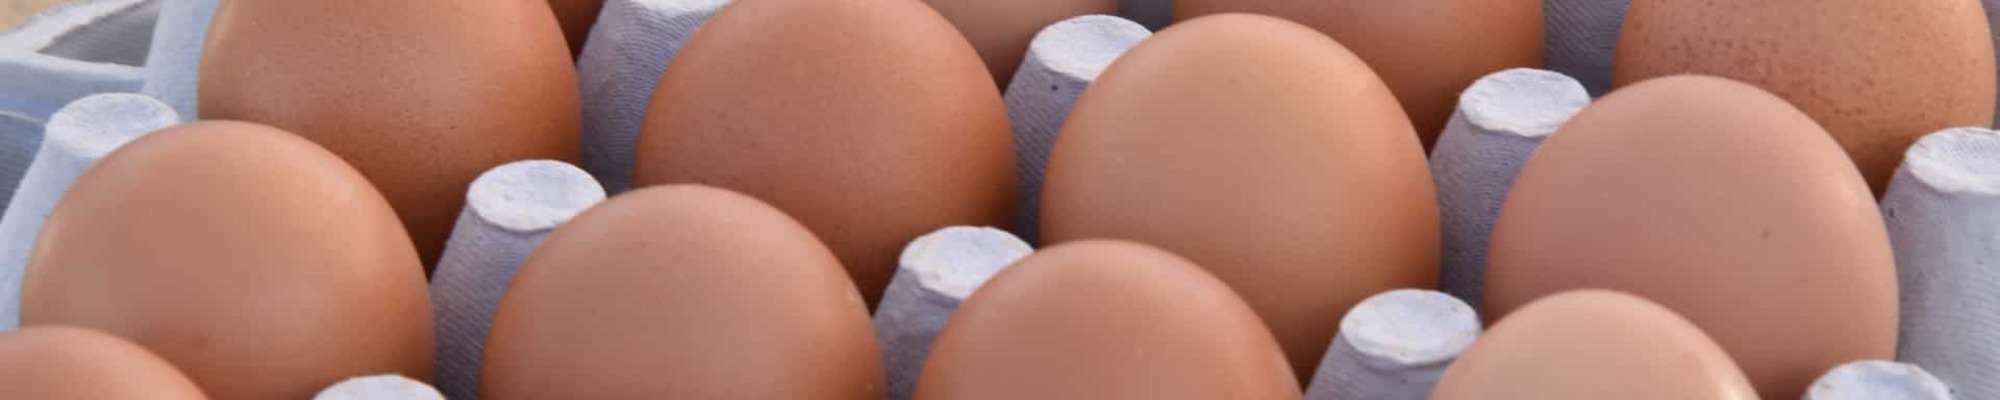 Rozprava o vajciach: Zaslúžia si svoju zlú reputáciu?